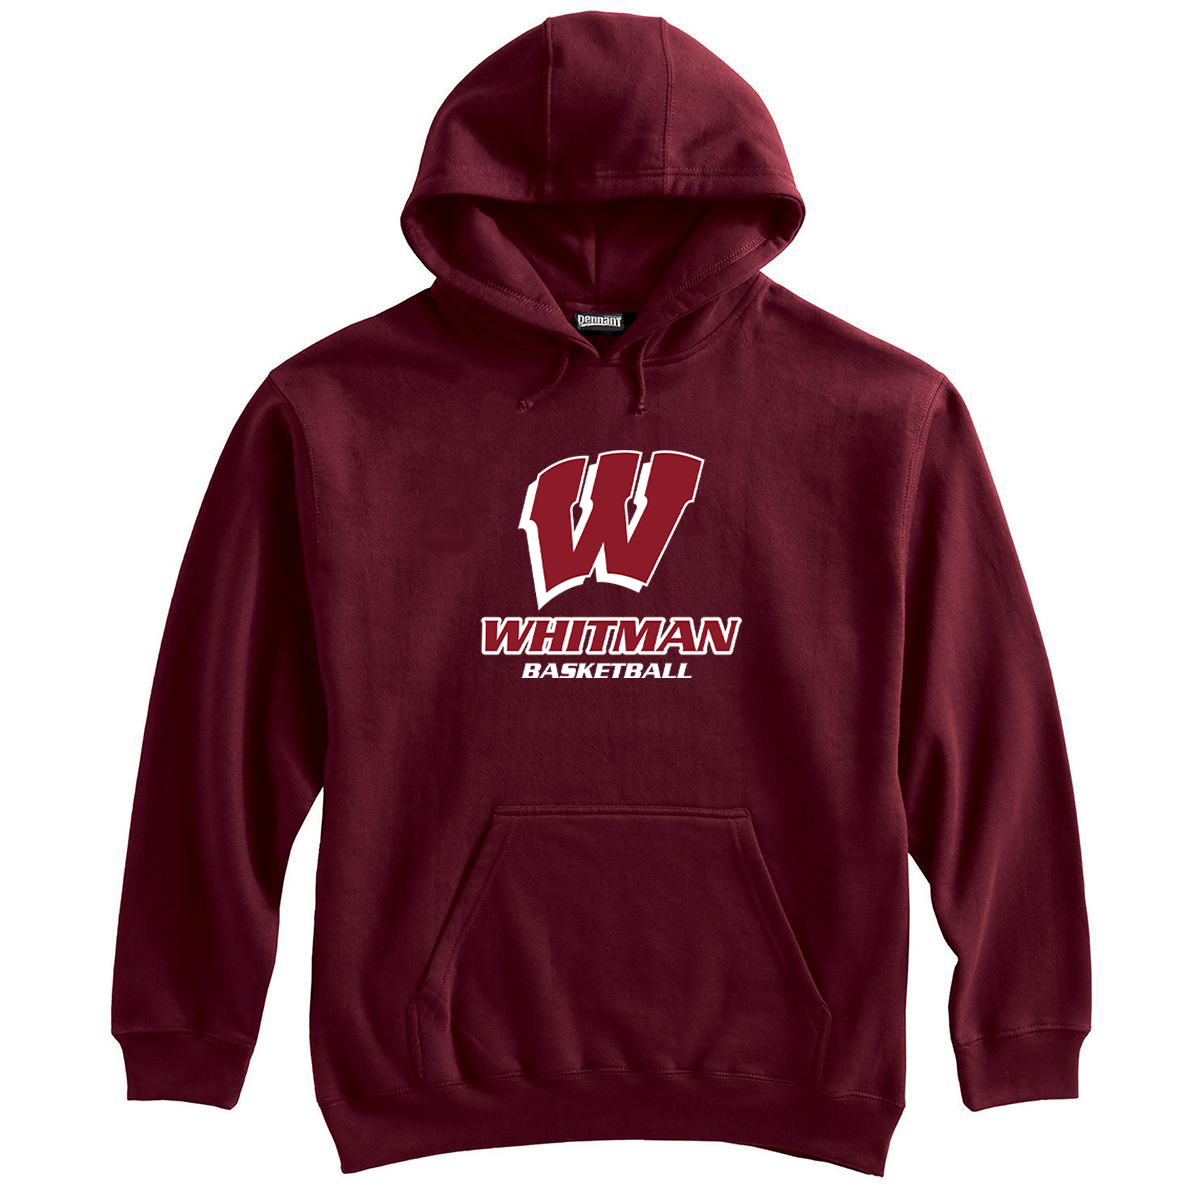 Whitman Basketball Sweatshirt